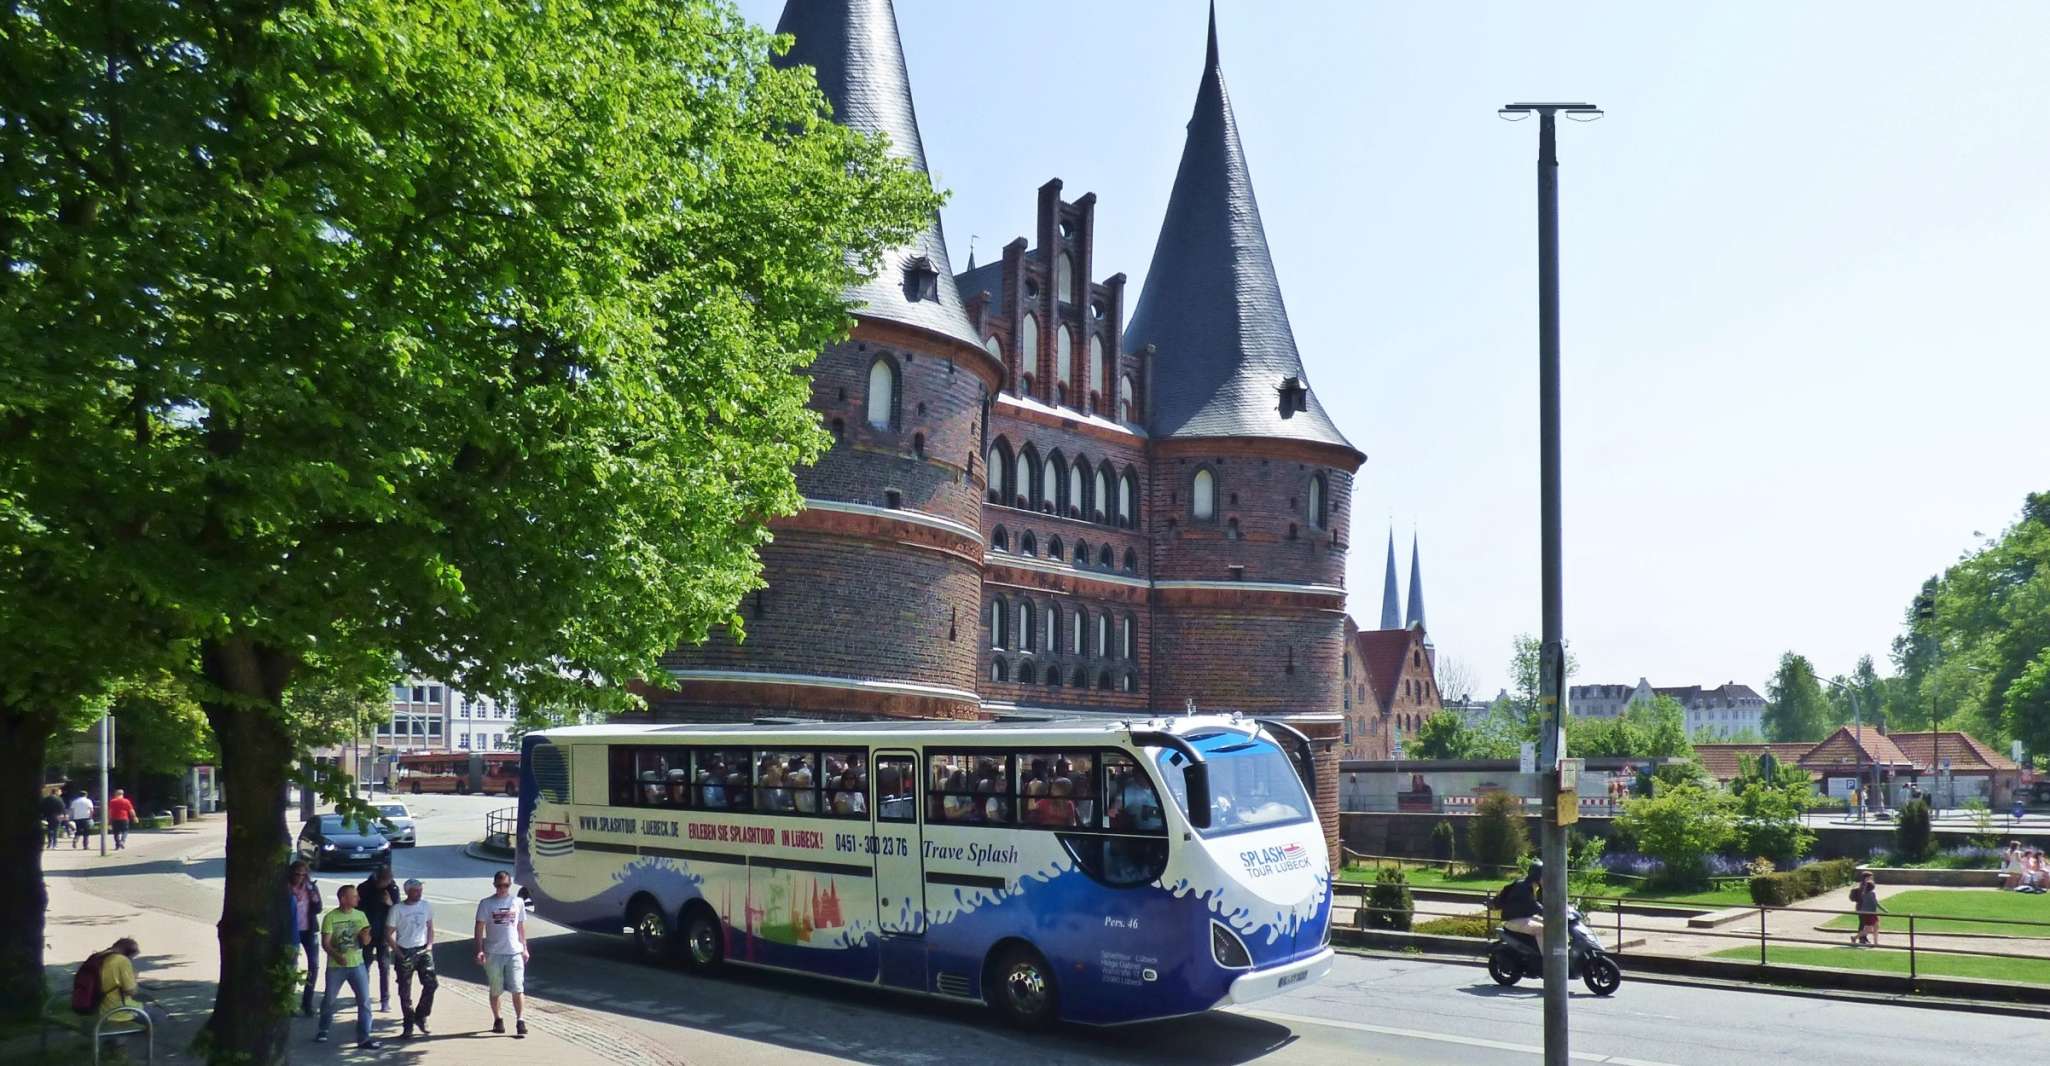 Lübeck, 1-Hour Splash Bus City Tour - Housity